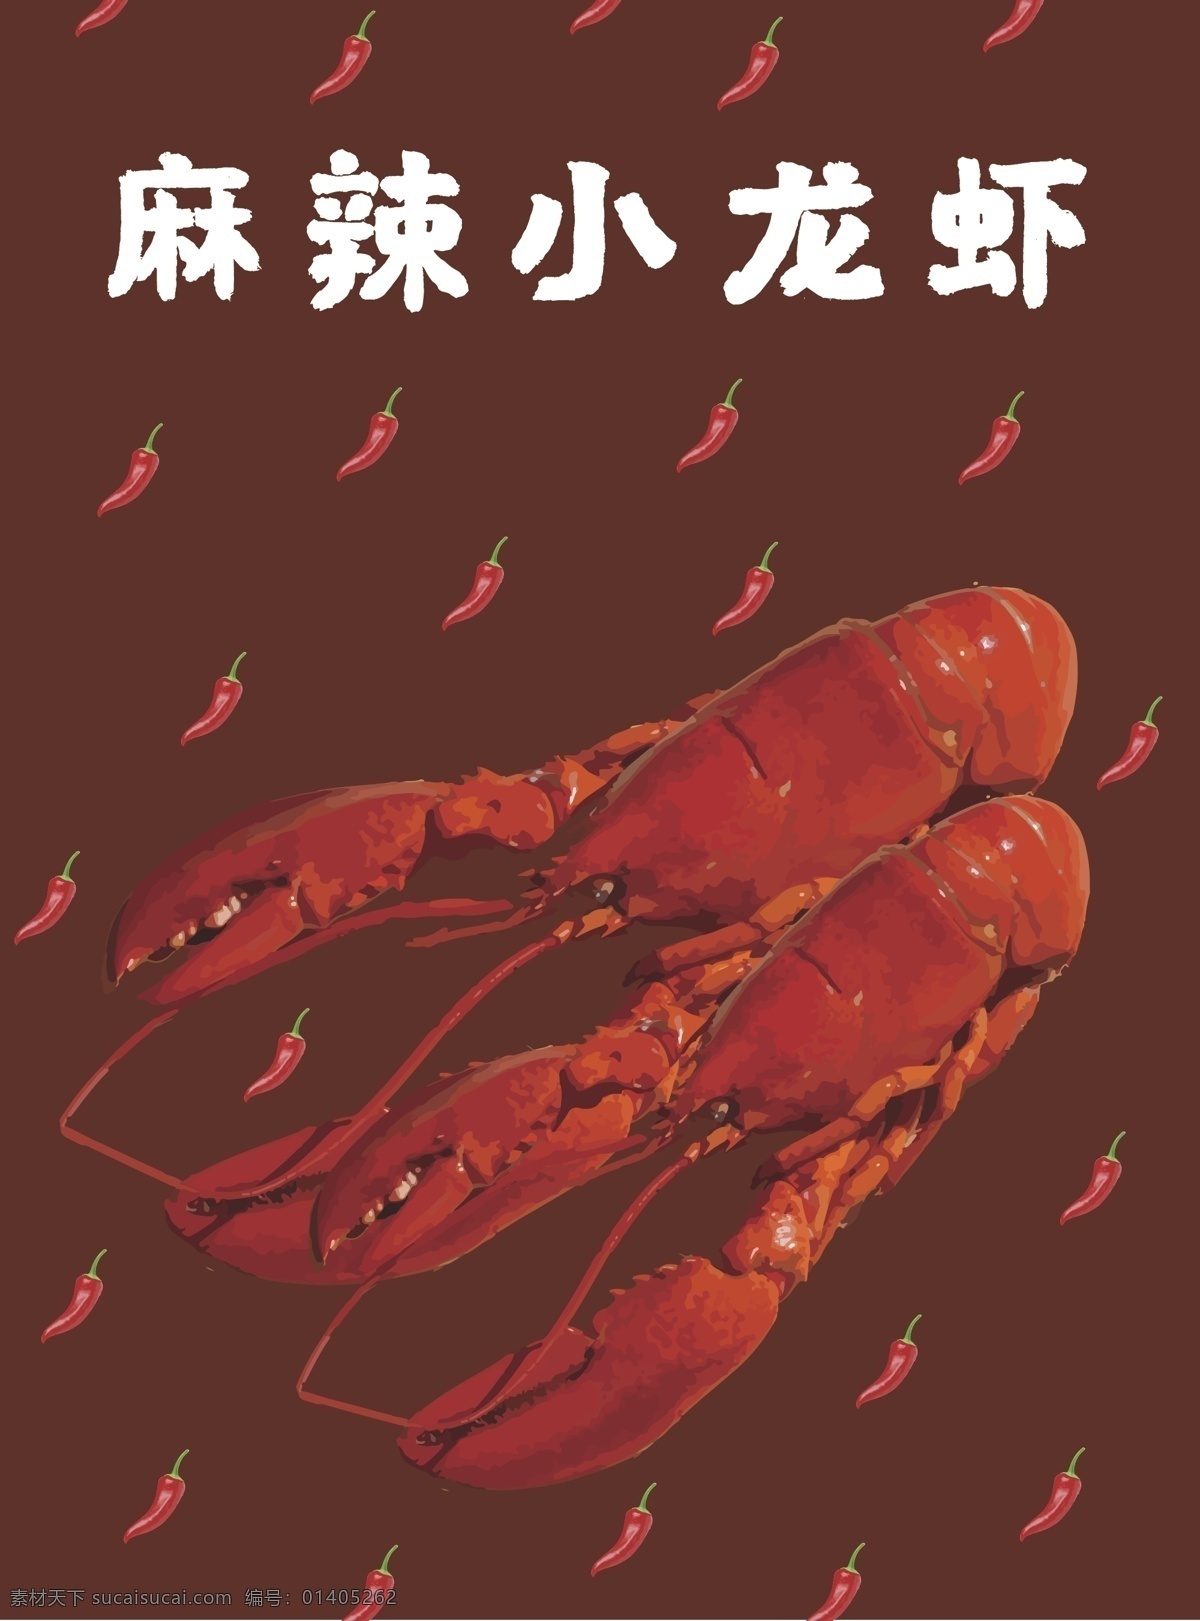 美味 美食 麻辣 小 龙虾 包装 插画 海鲜 小龙虾